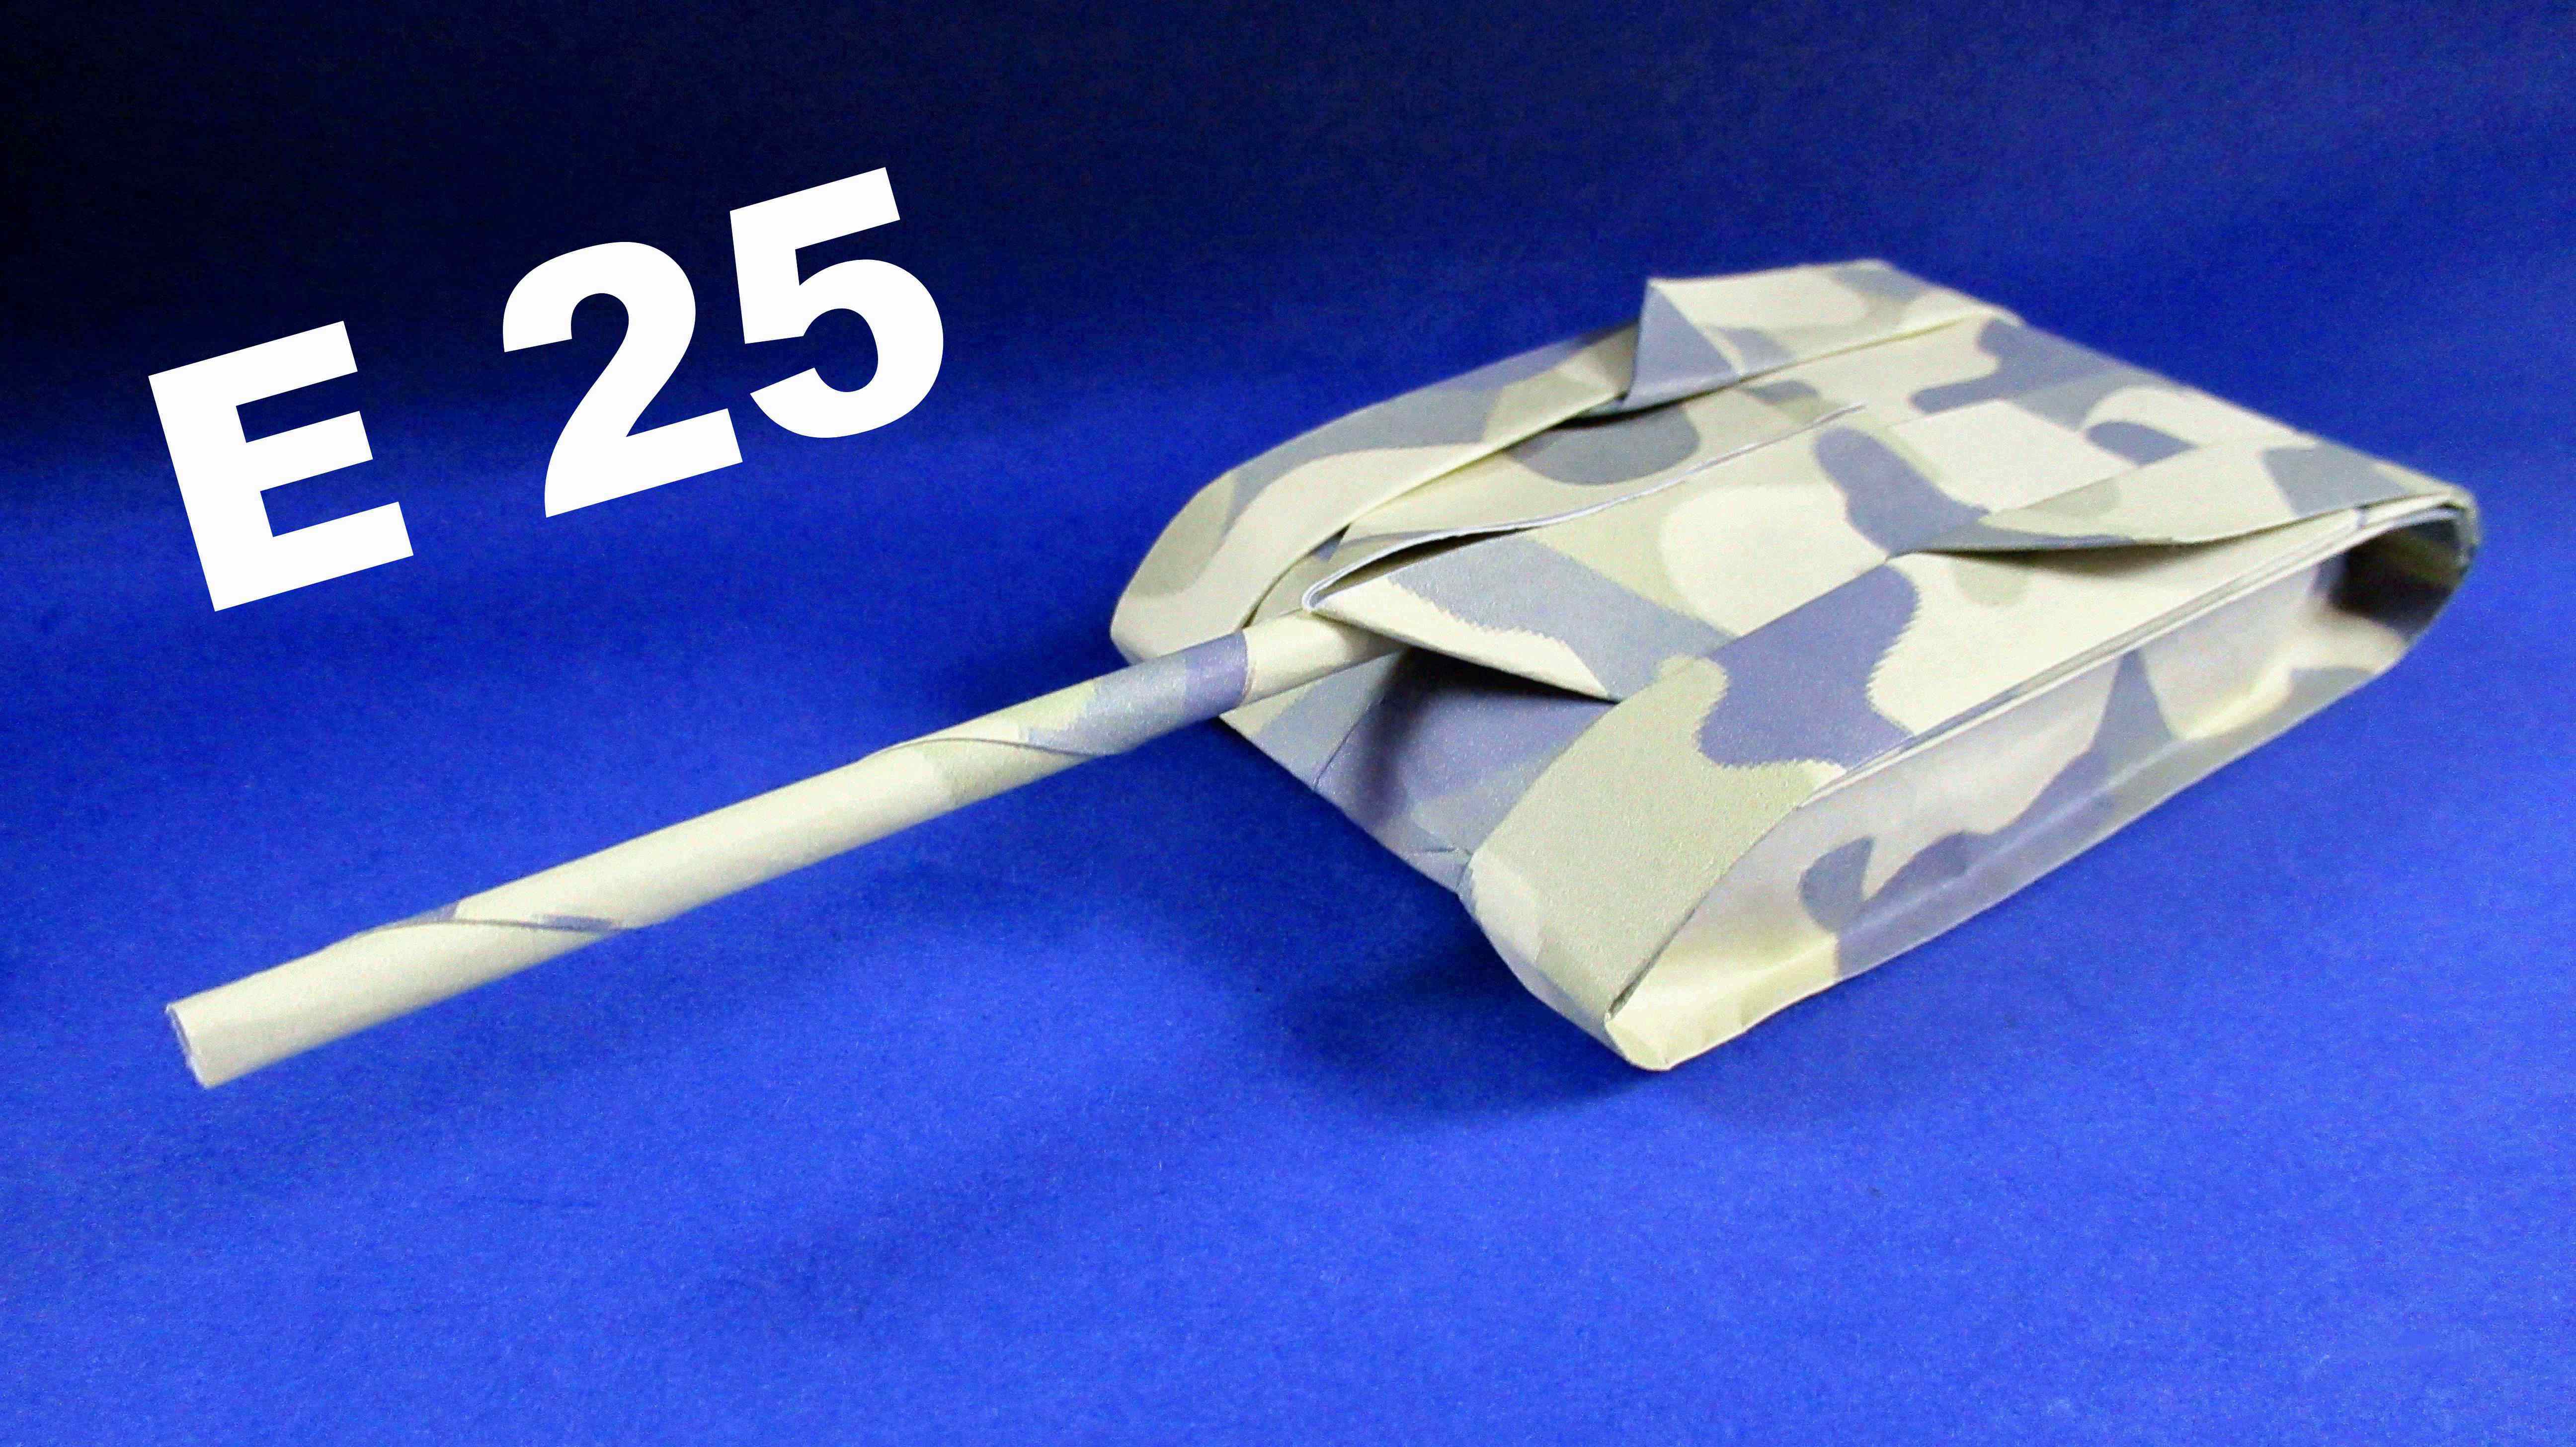 Танчики на бумаге. Танк е 25 из бумаги. Модель танка из картона. Макет танка из бумаги. Объемный танк из бумаги.